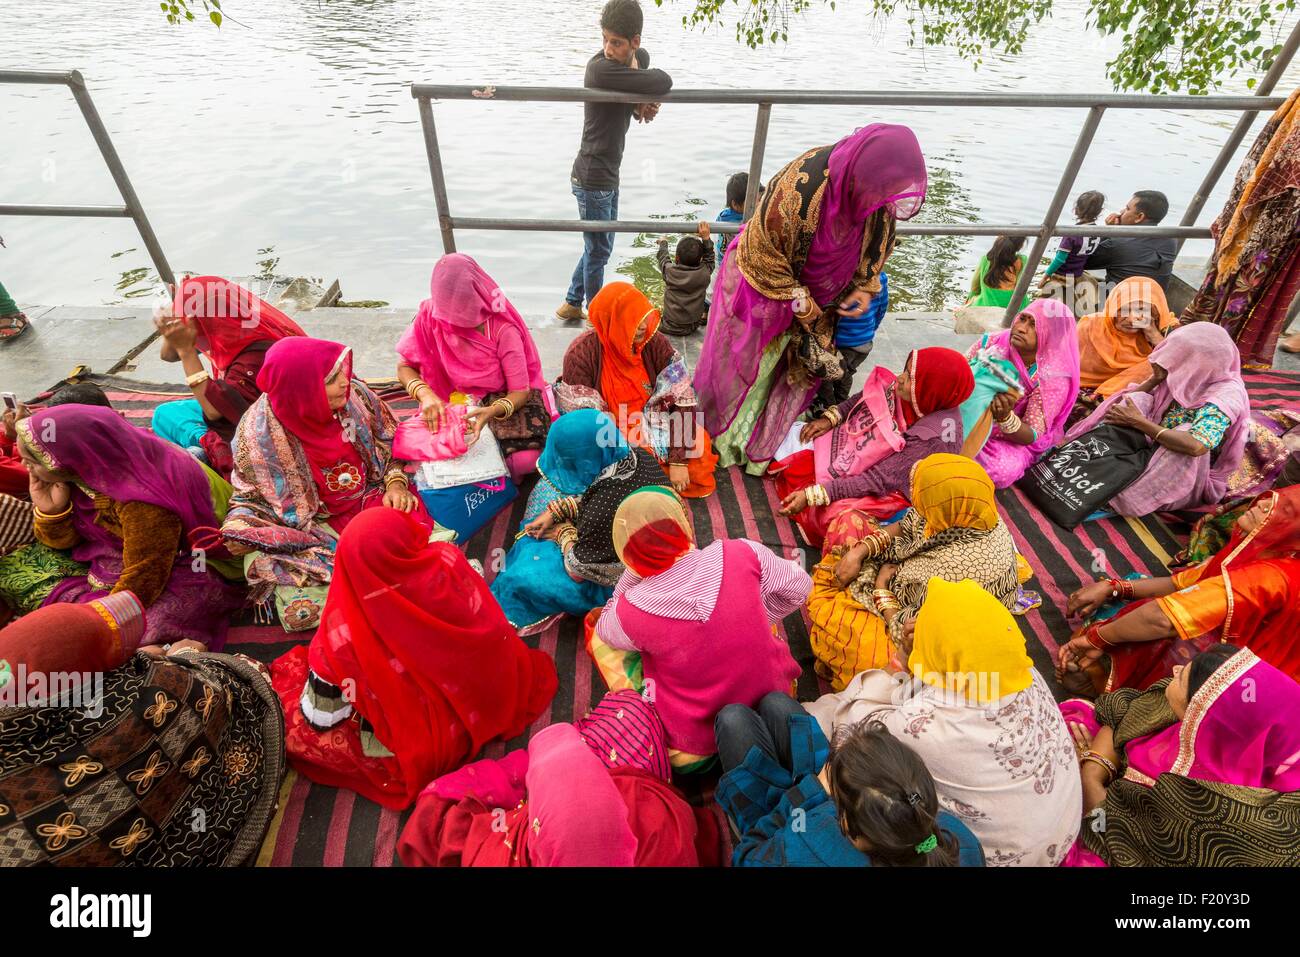 India, Rajasthan state, Udaipur, wedding ceremony along Lake Pichola Stock Photo